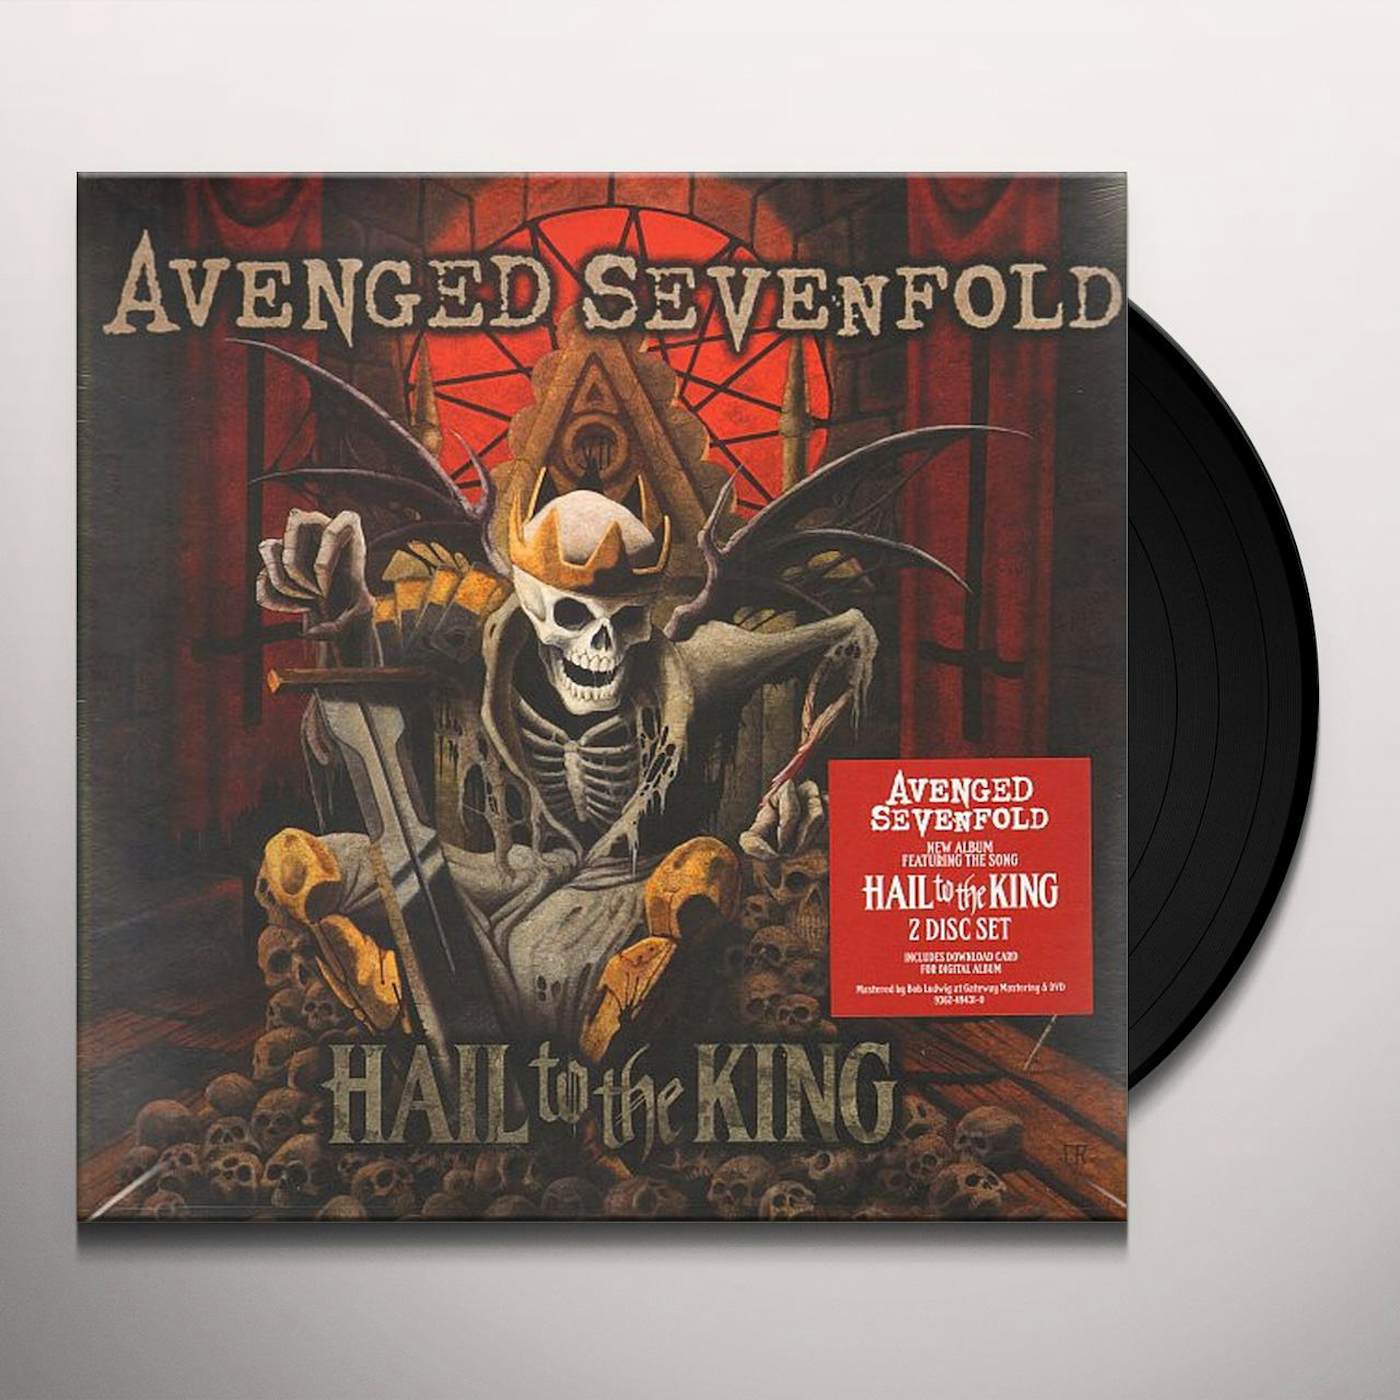 Avenged Sevenfold - Requiem (LYRICS) 